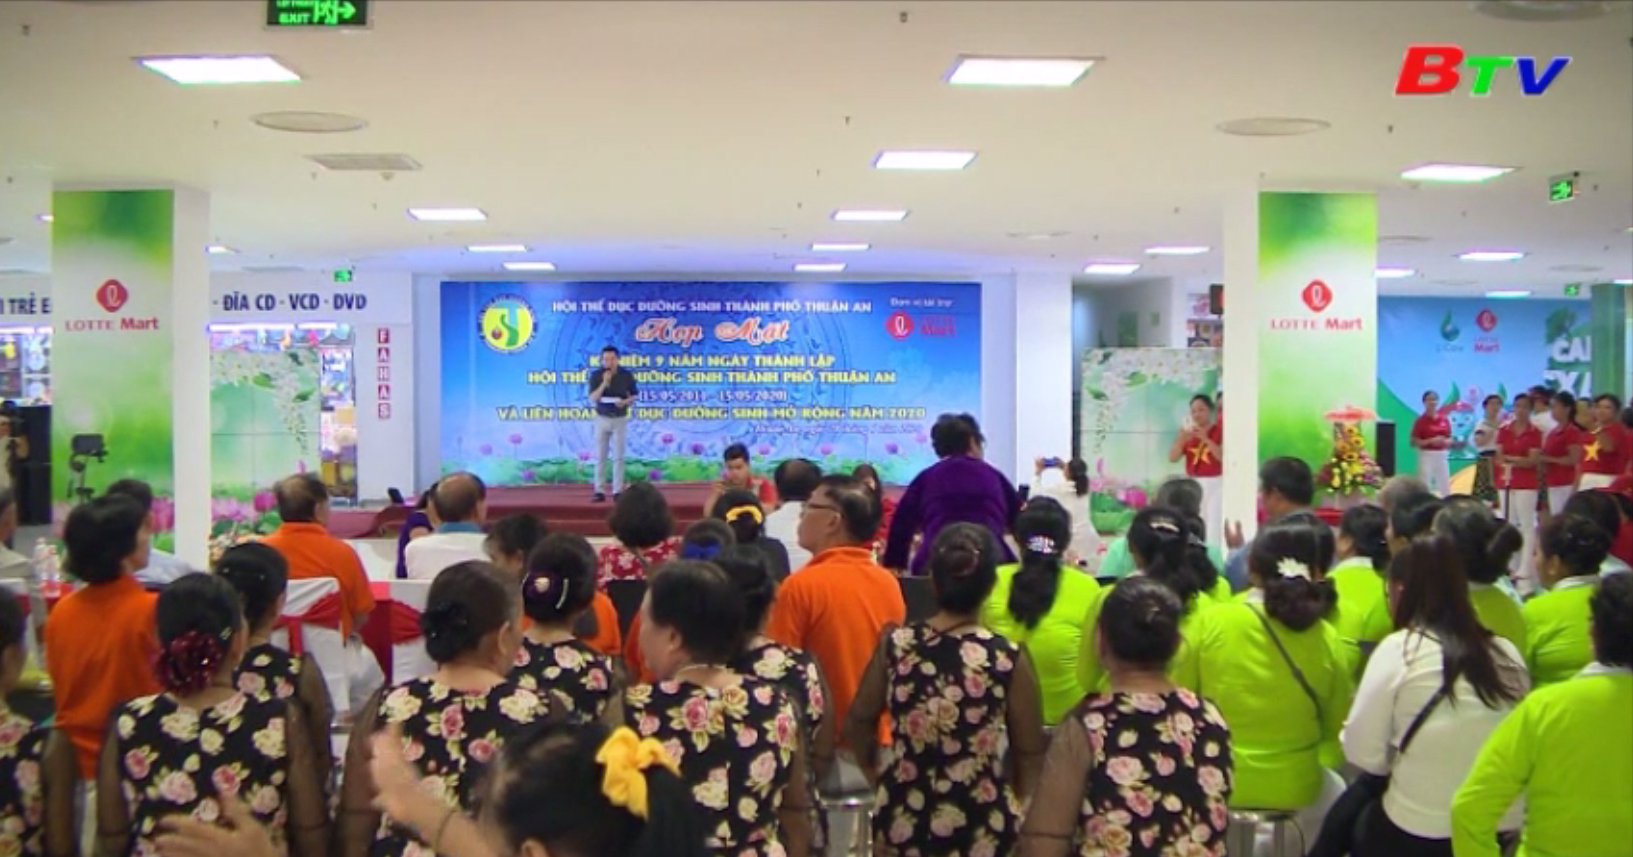 Hội Thể dục dưỡng sinh thành phố Thuận An kỷ niệm 9 năm ngày thành lập